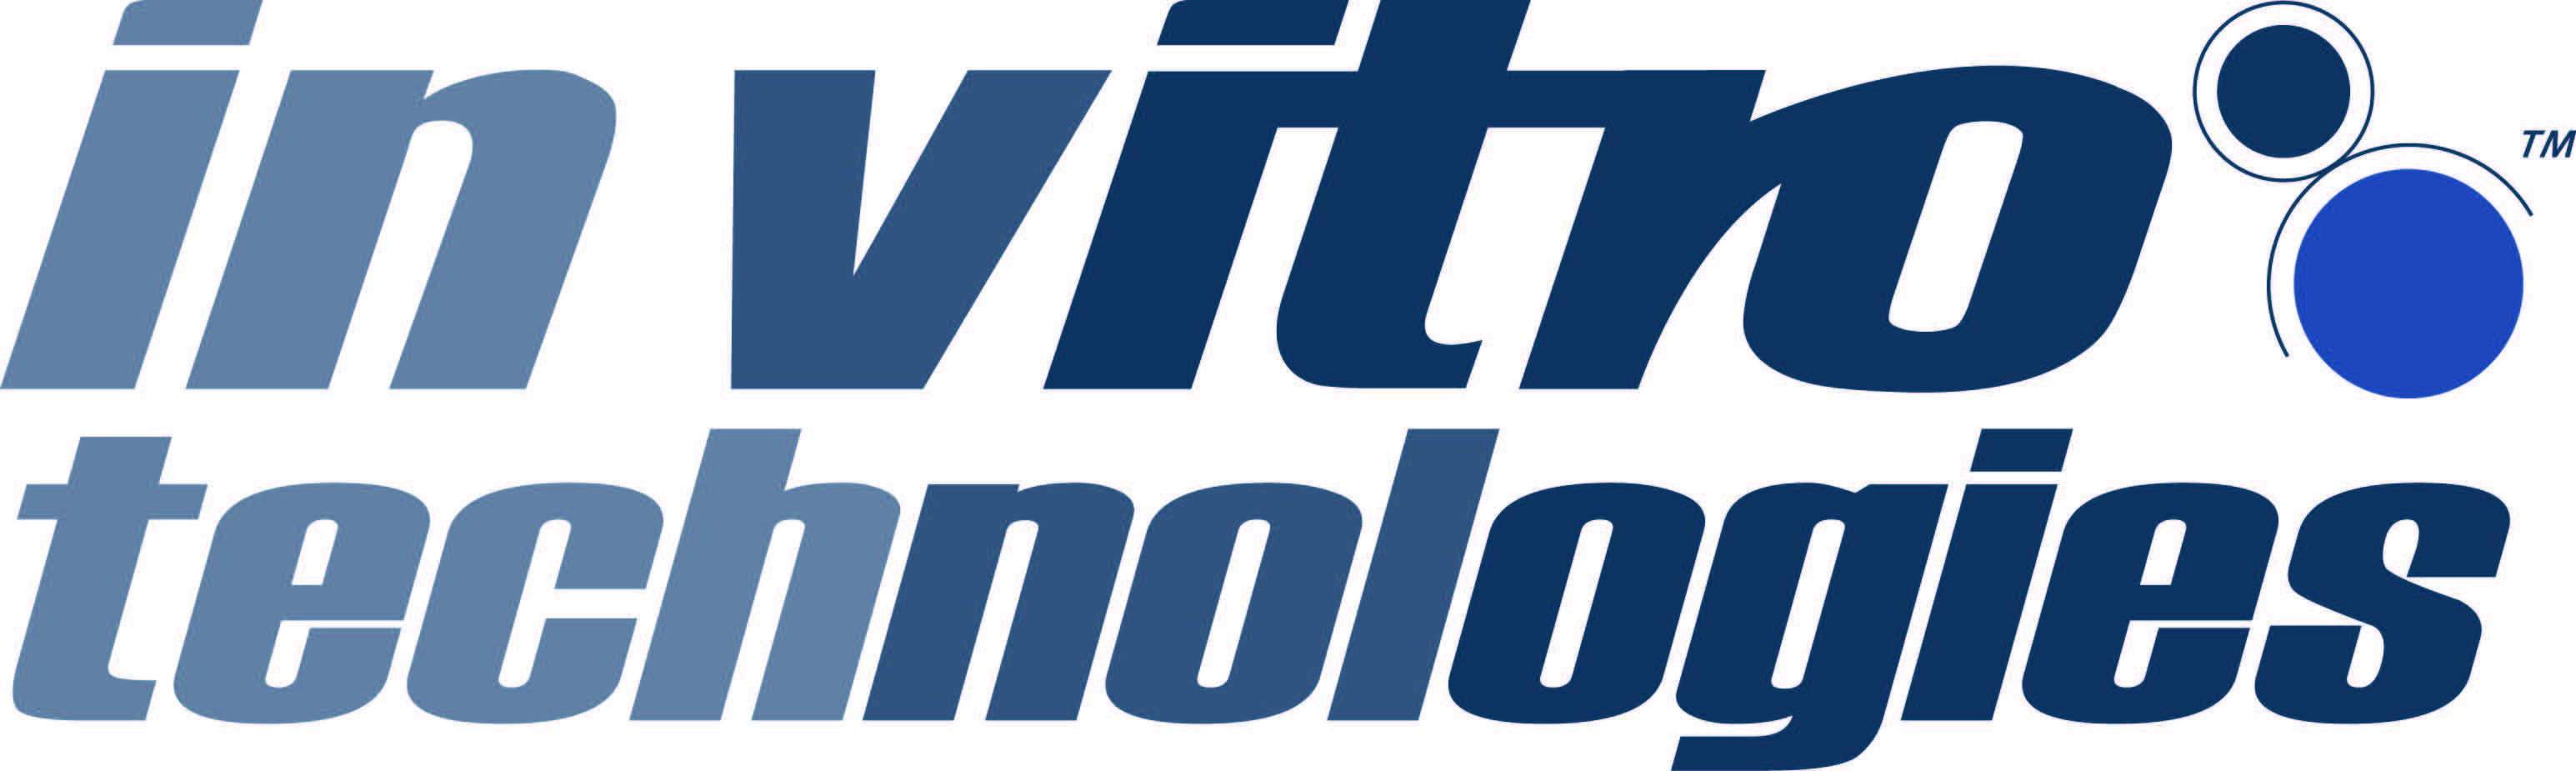 In Vitro Technologies, JCSMR Corporate sponsor